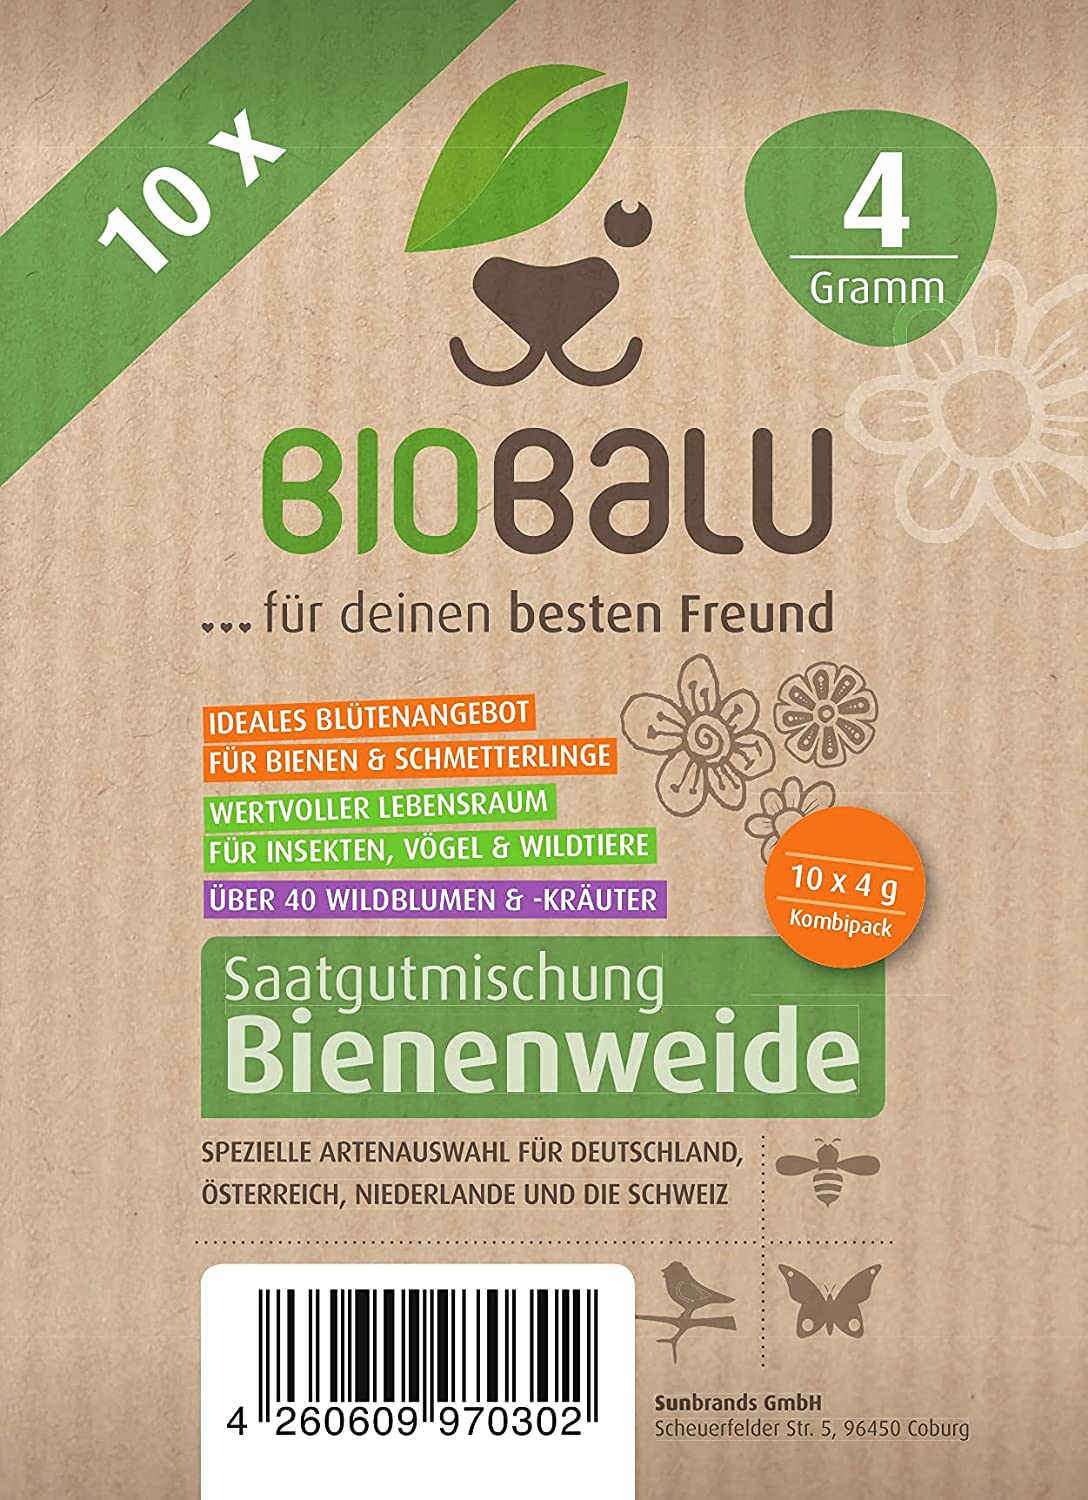 Biobalu Bienenweide Promo - 100x4g